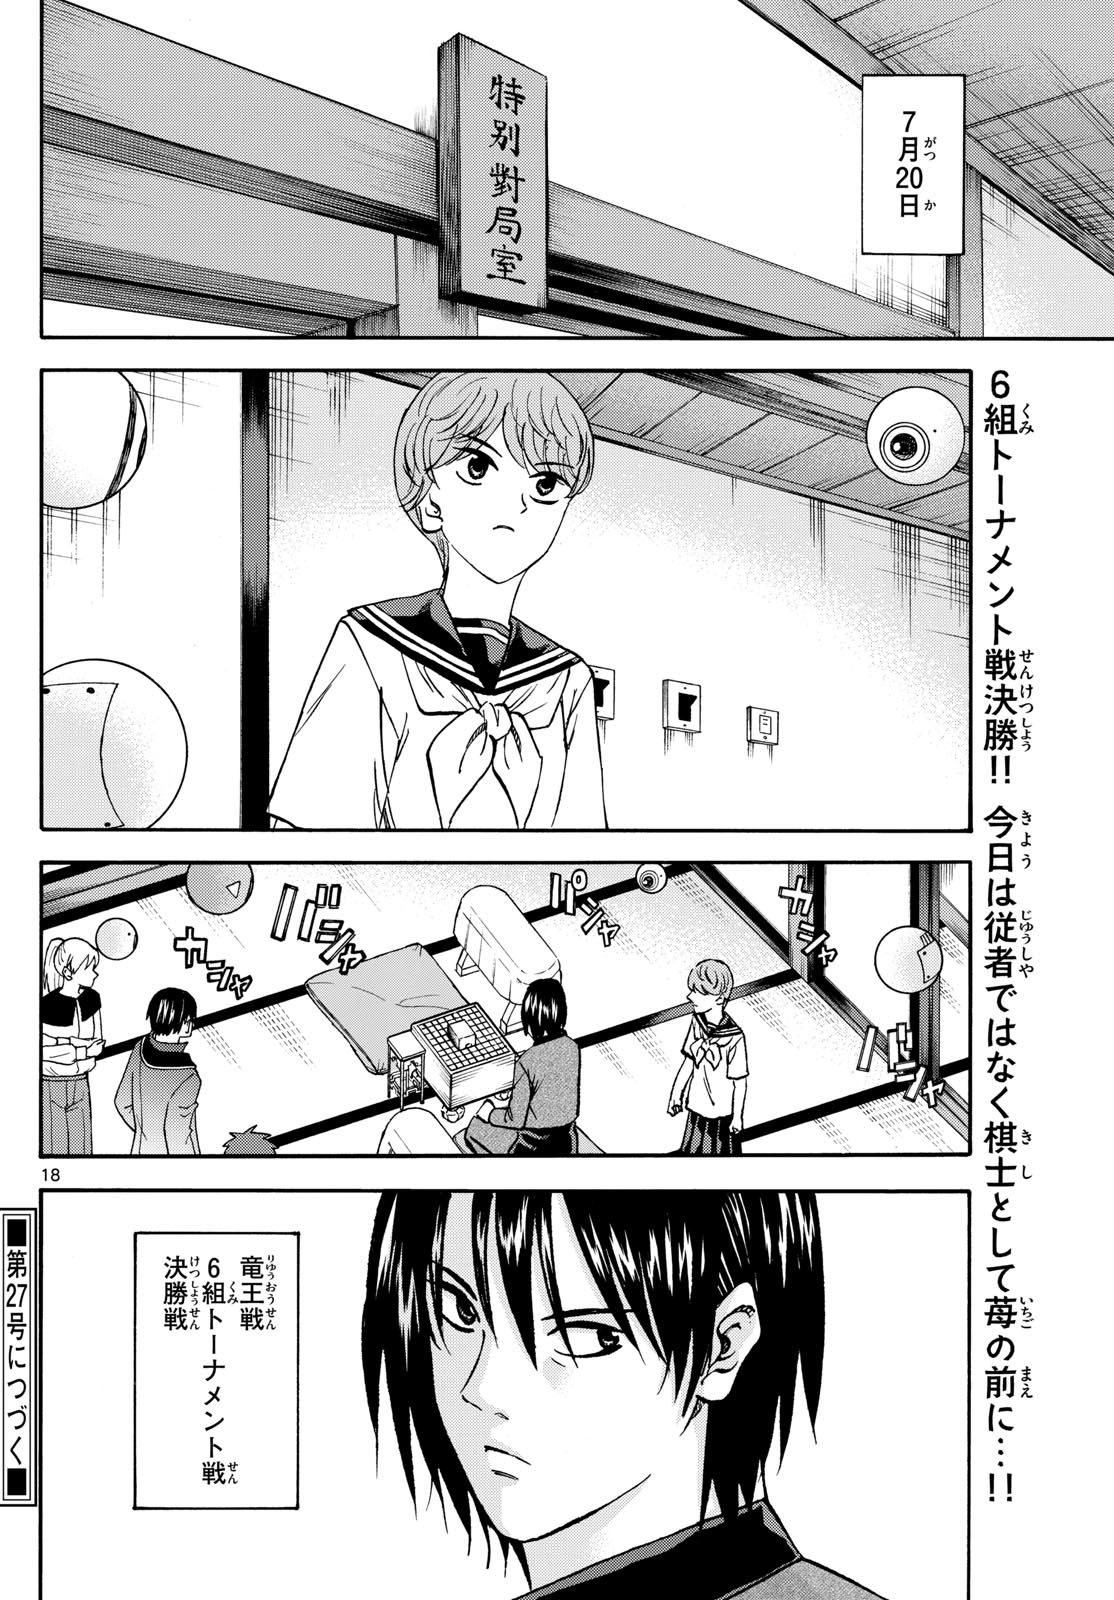 Tatsu to Ichigo - Chapter 192 - Page 18